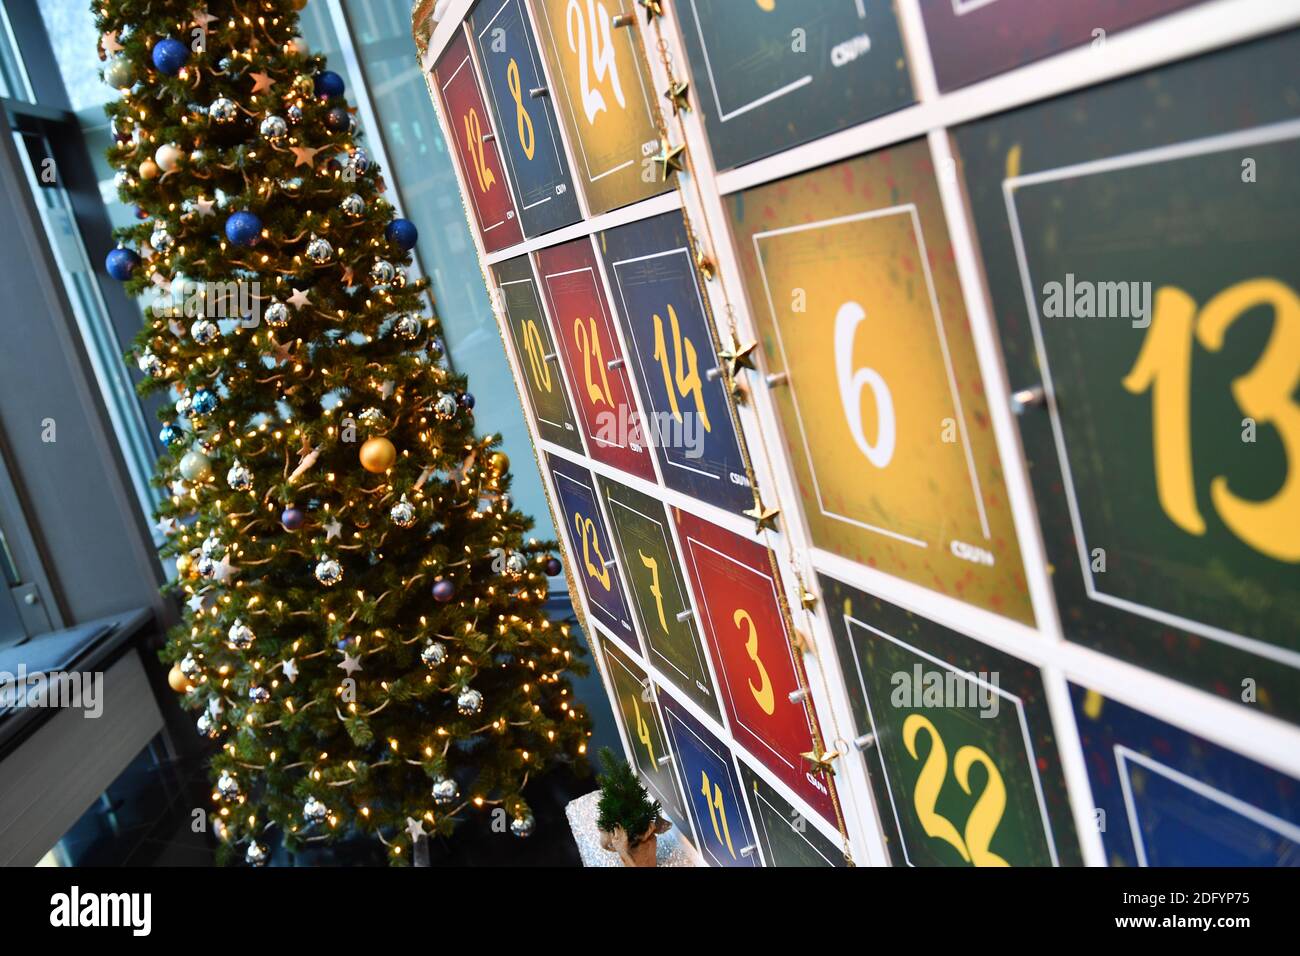 München, Deutschland. Dezember 2020. Weihaftertlich geschmückter Weihnachtsbaum und Adventskalender, Weihaftertsbaum, Weihnachtsbaum in der CSU-Zentrale in München am 7. Dezember 2020 Quelle: dpa/Alamy Live News Stockfoto